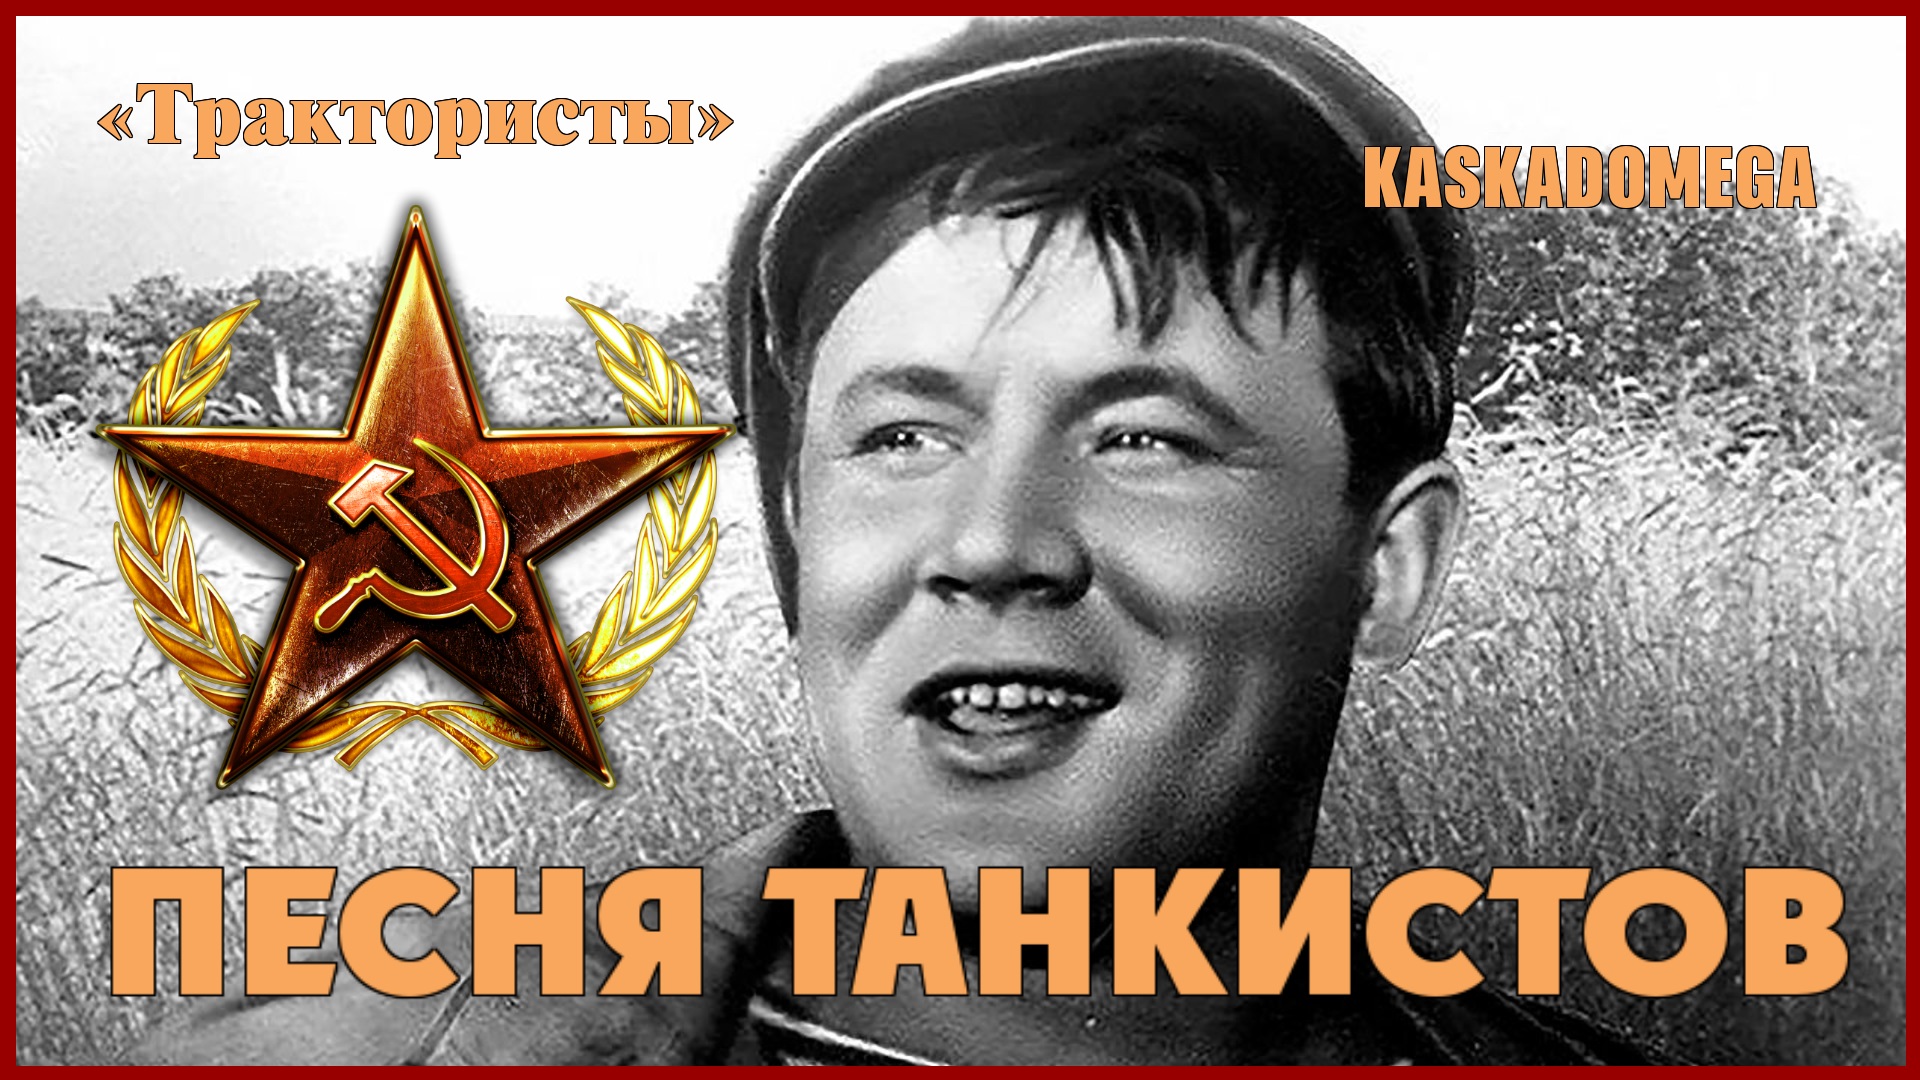 "Трактористы" - Песня танкистов (1939)